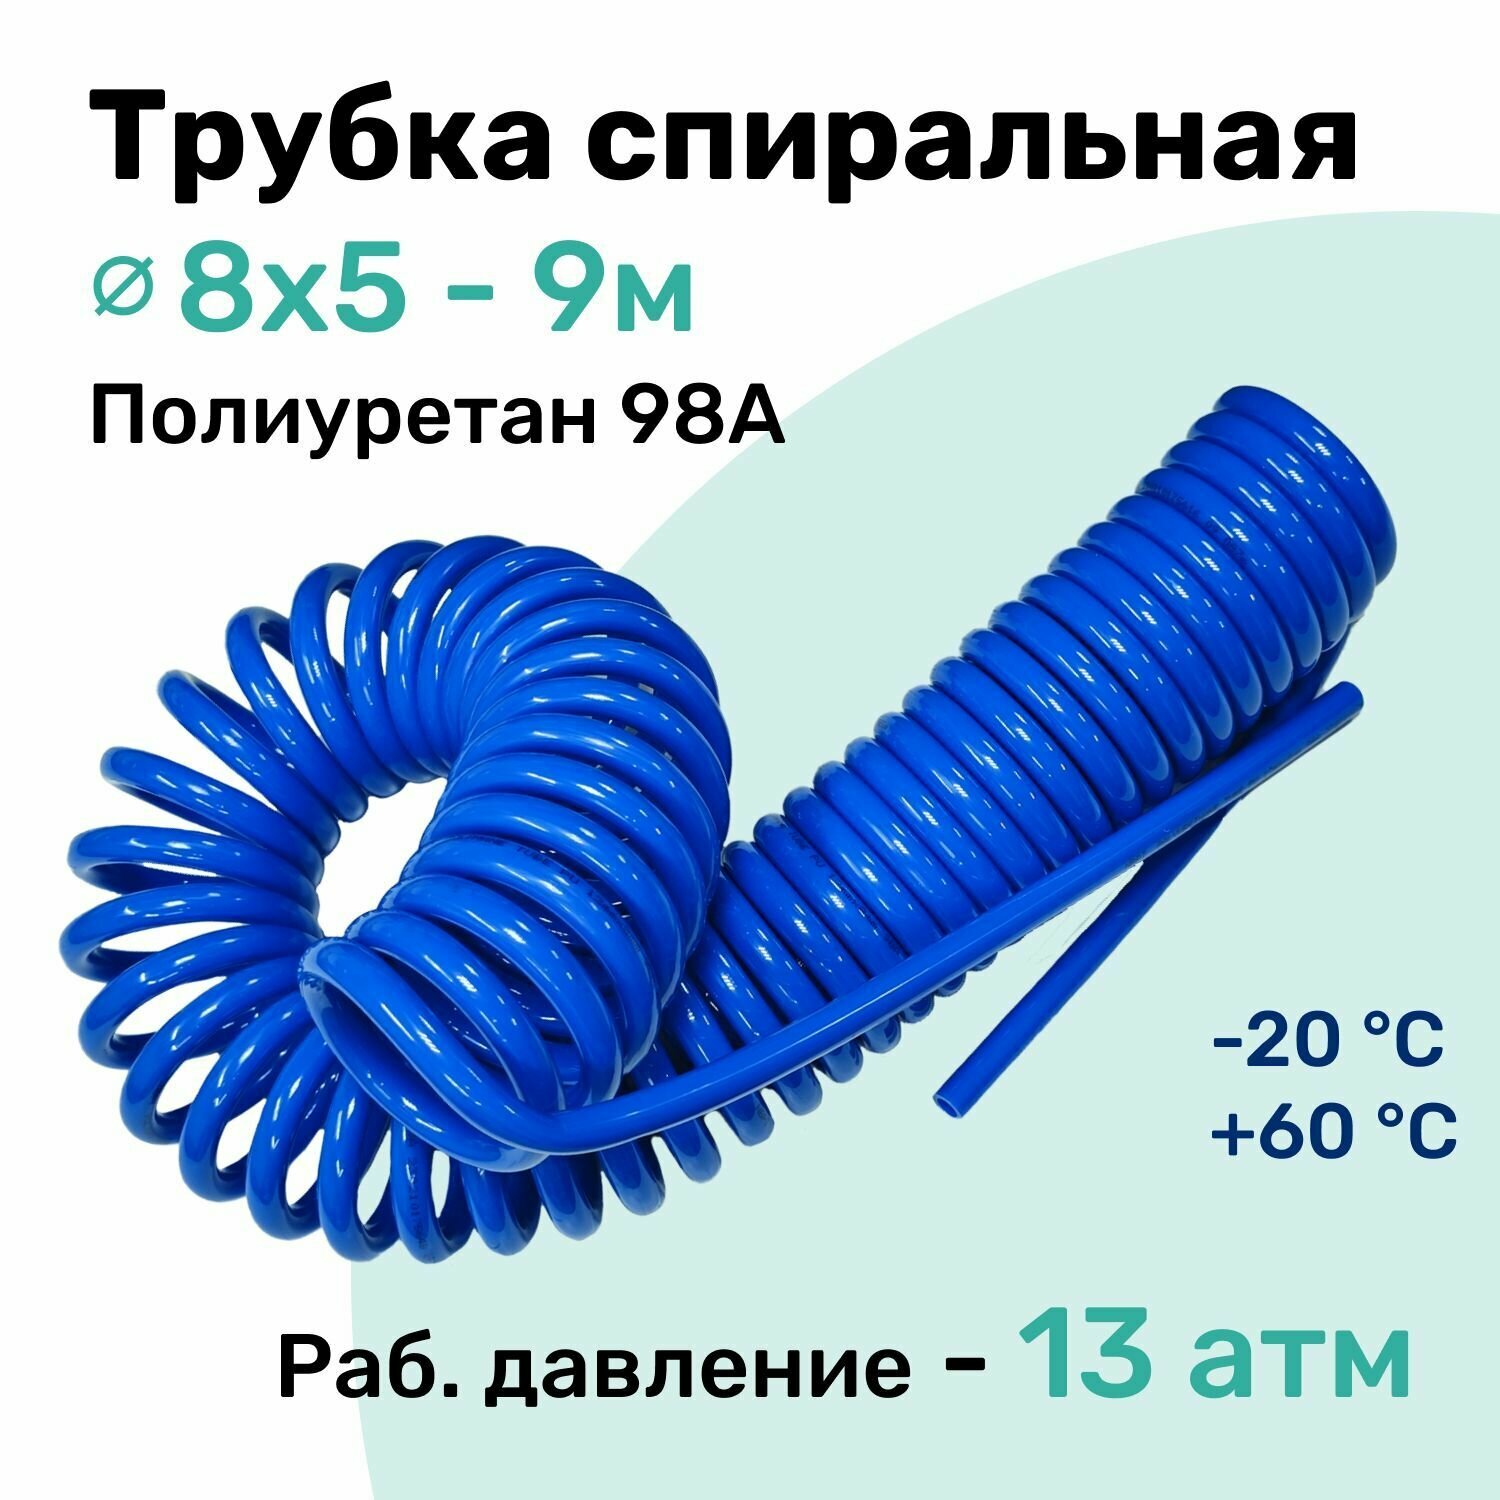 Пневмотрубка спиральная 8x5мм, полиуретановая PU98A, 9м, 13 атм, Синий, Шланг спиральный пневматический NBPT